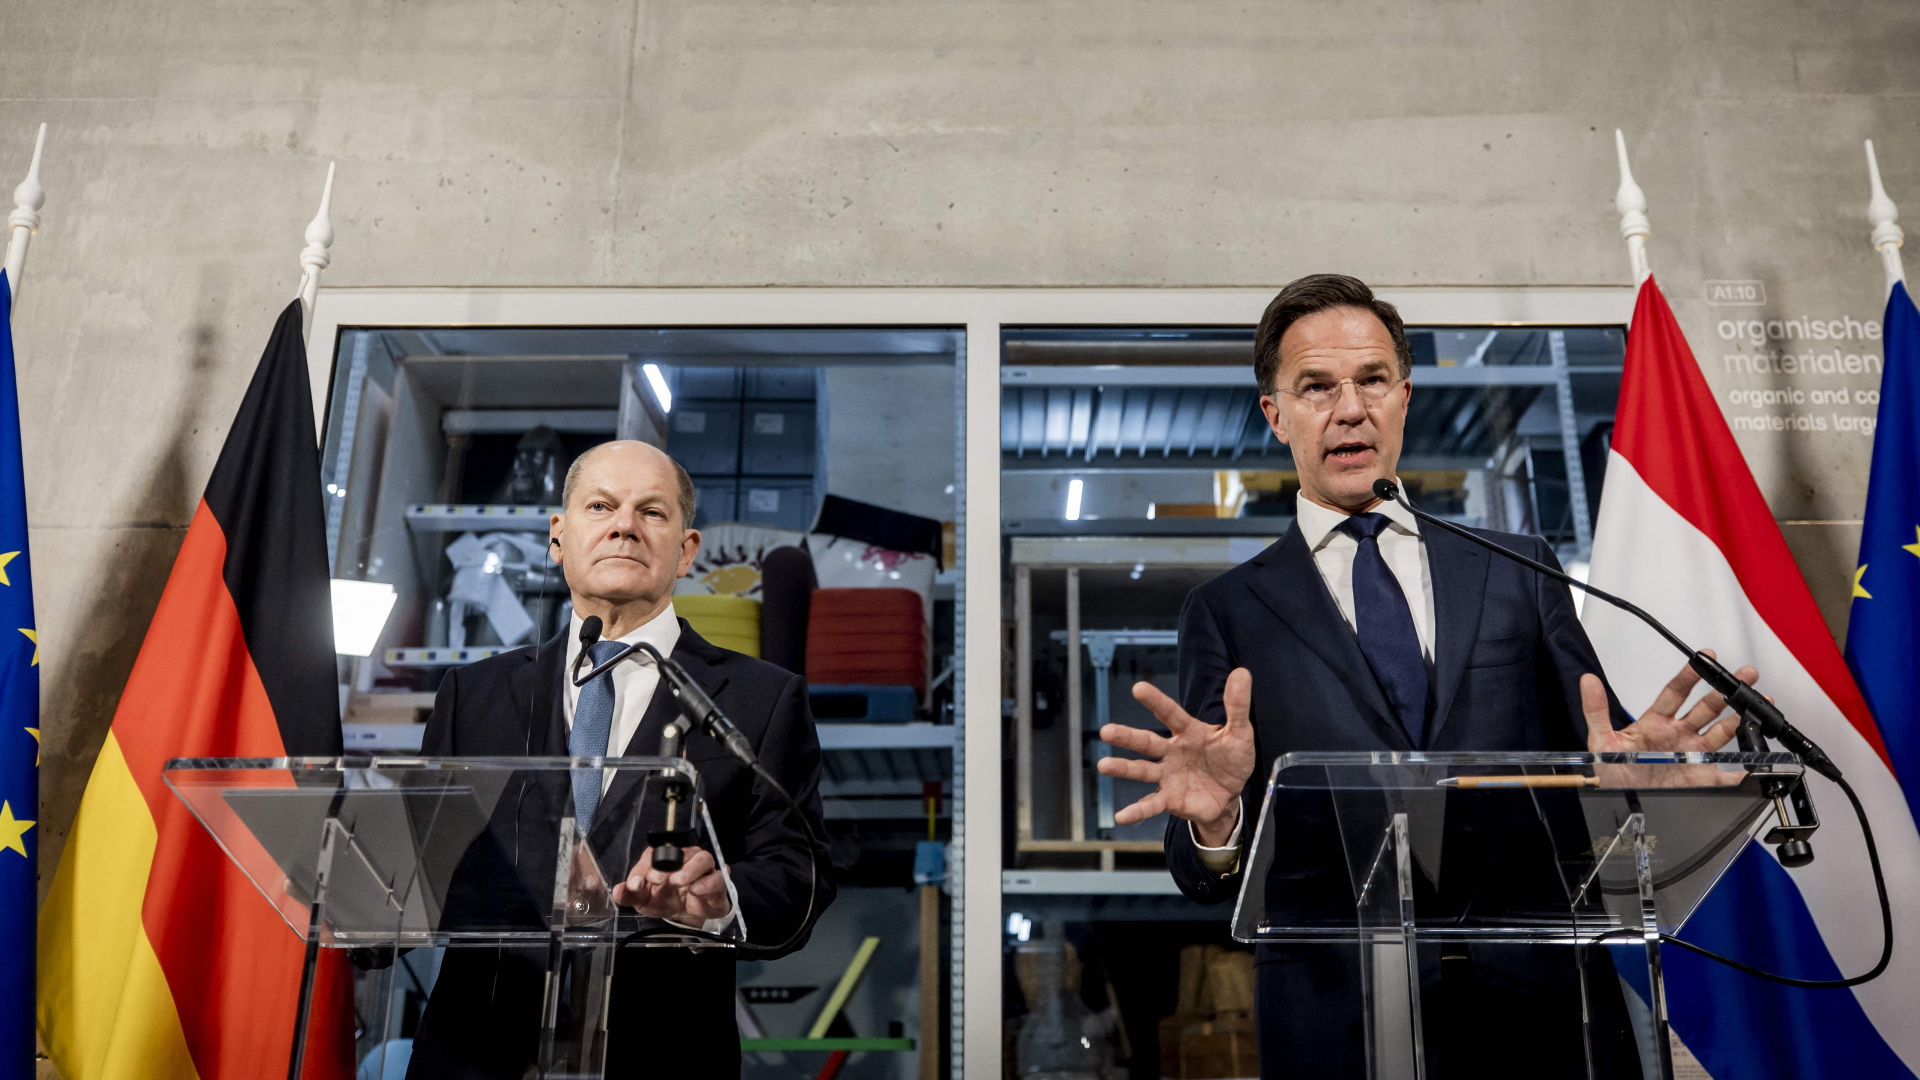 Bundeskanzler Olaf Scholz und der niederländische Ministerpräsident Mark Rutte sprechen bei einer Pressekonferenz über die deutsch-niederländischen Regierungskonsultationen in Rotterdam.